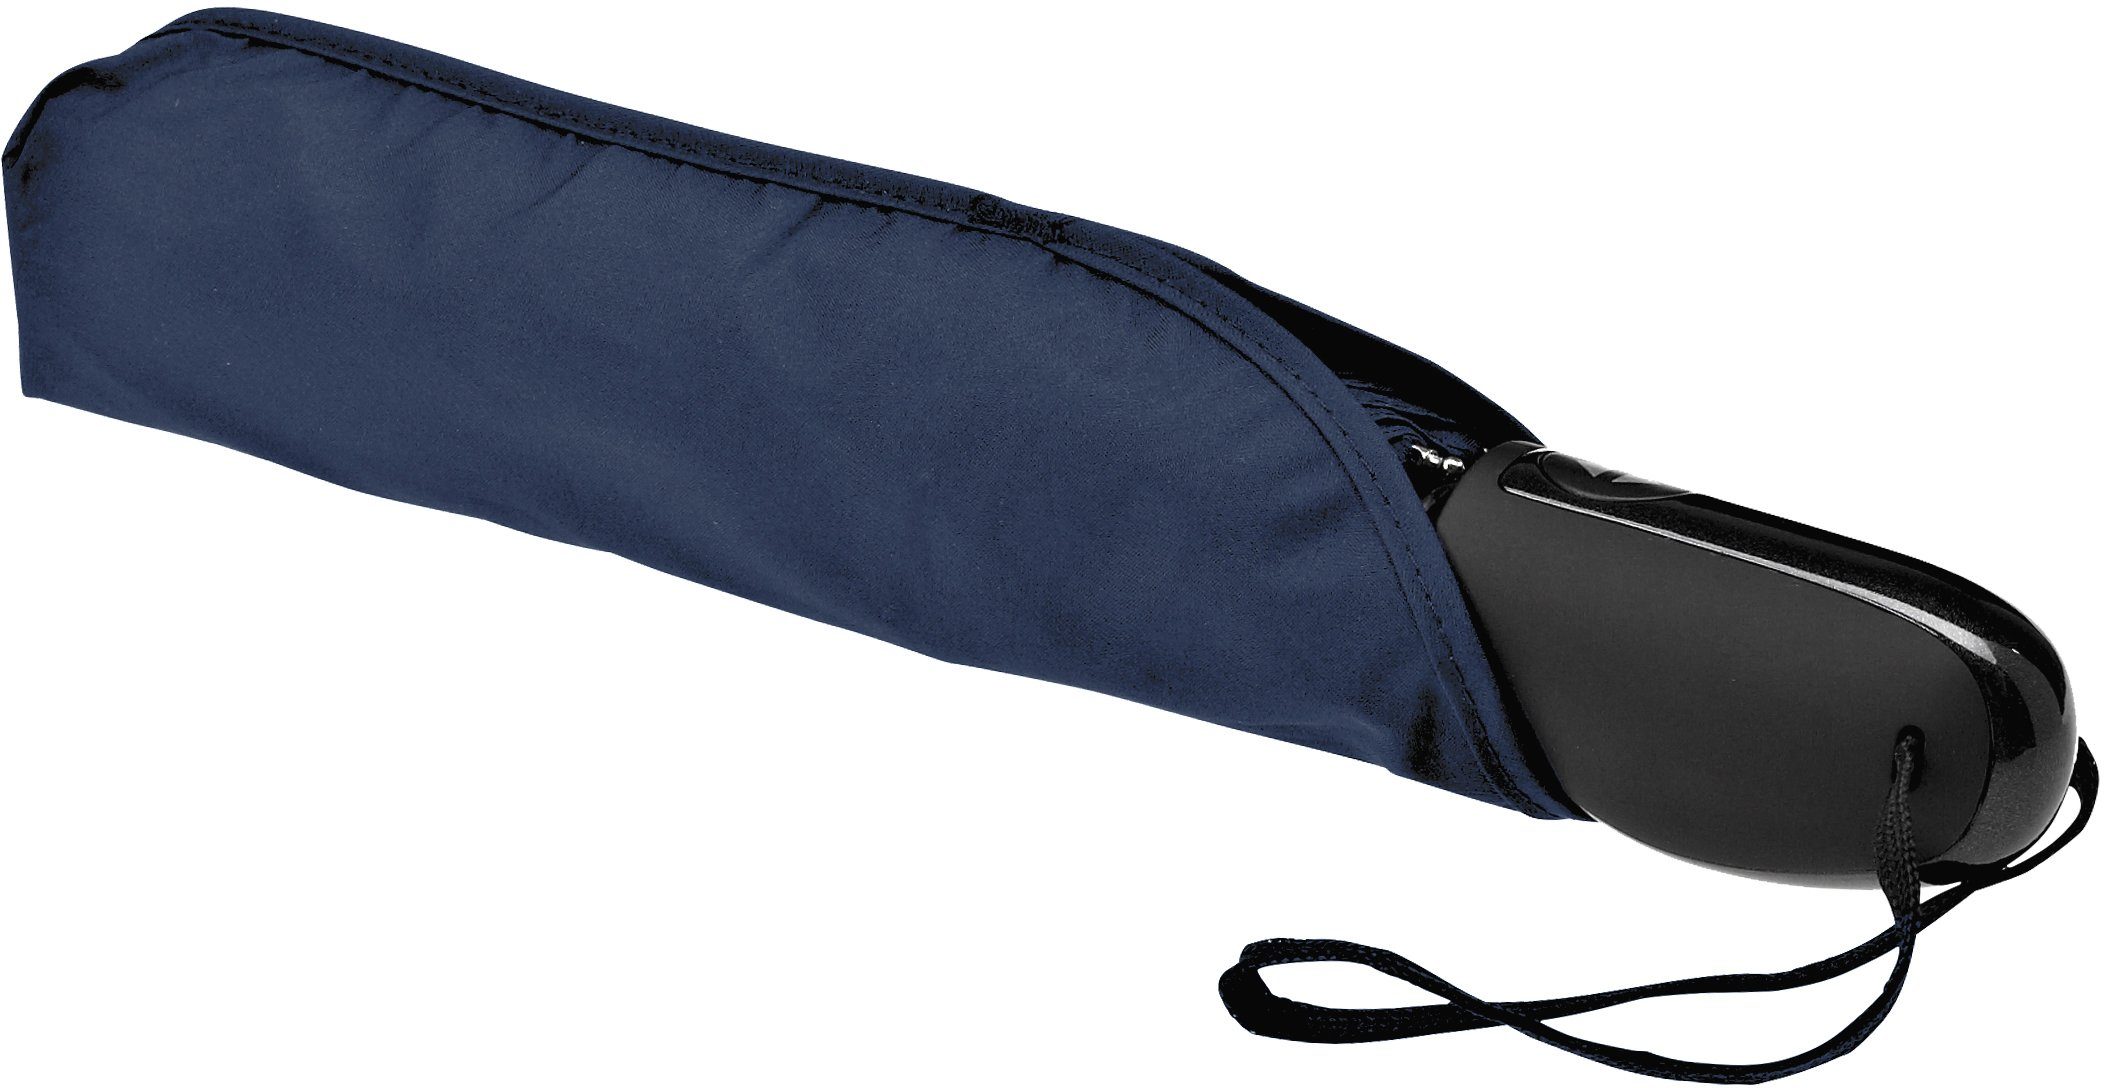 Automatik Taschenregenschirm EuroSCHIRM® 32S7, marineblau